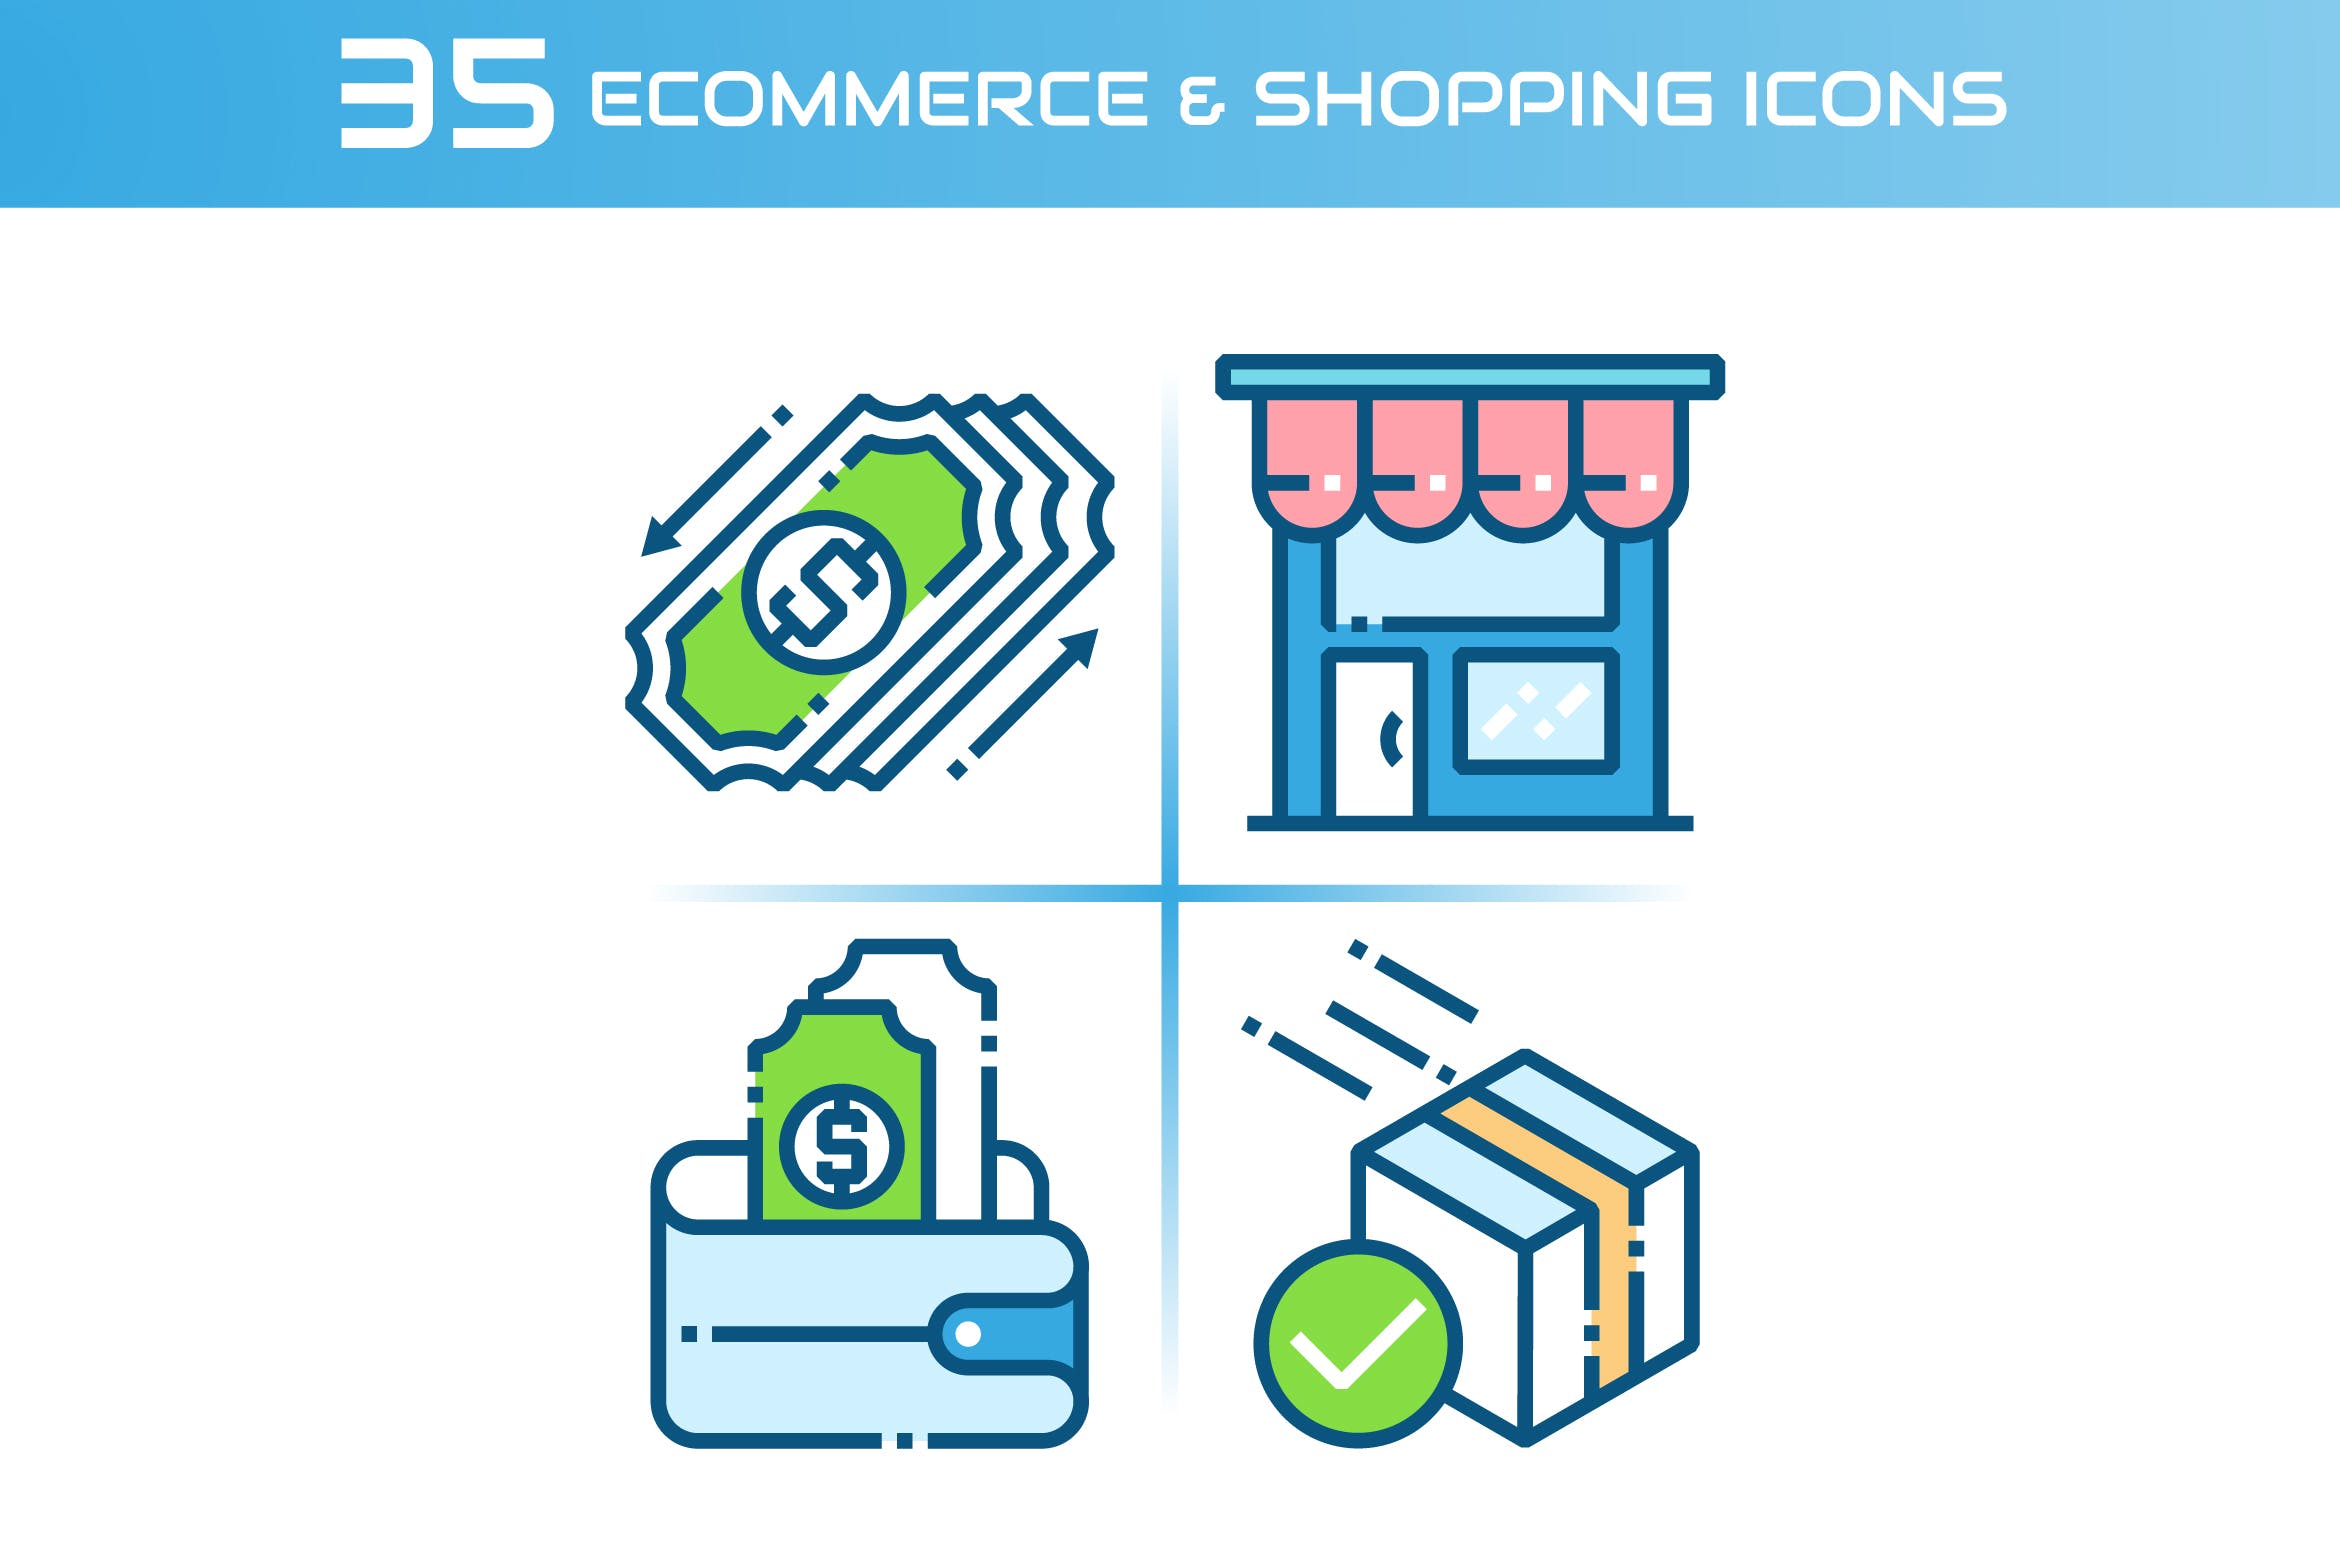 35枚电子商务&购物主题矢量16图库精选图标 E-commerce and Shopping Icons插图